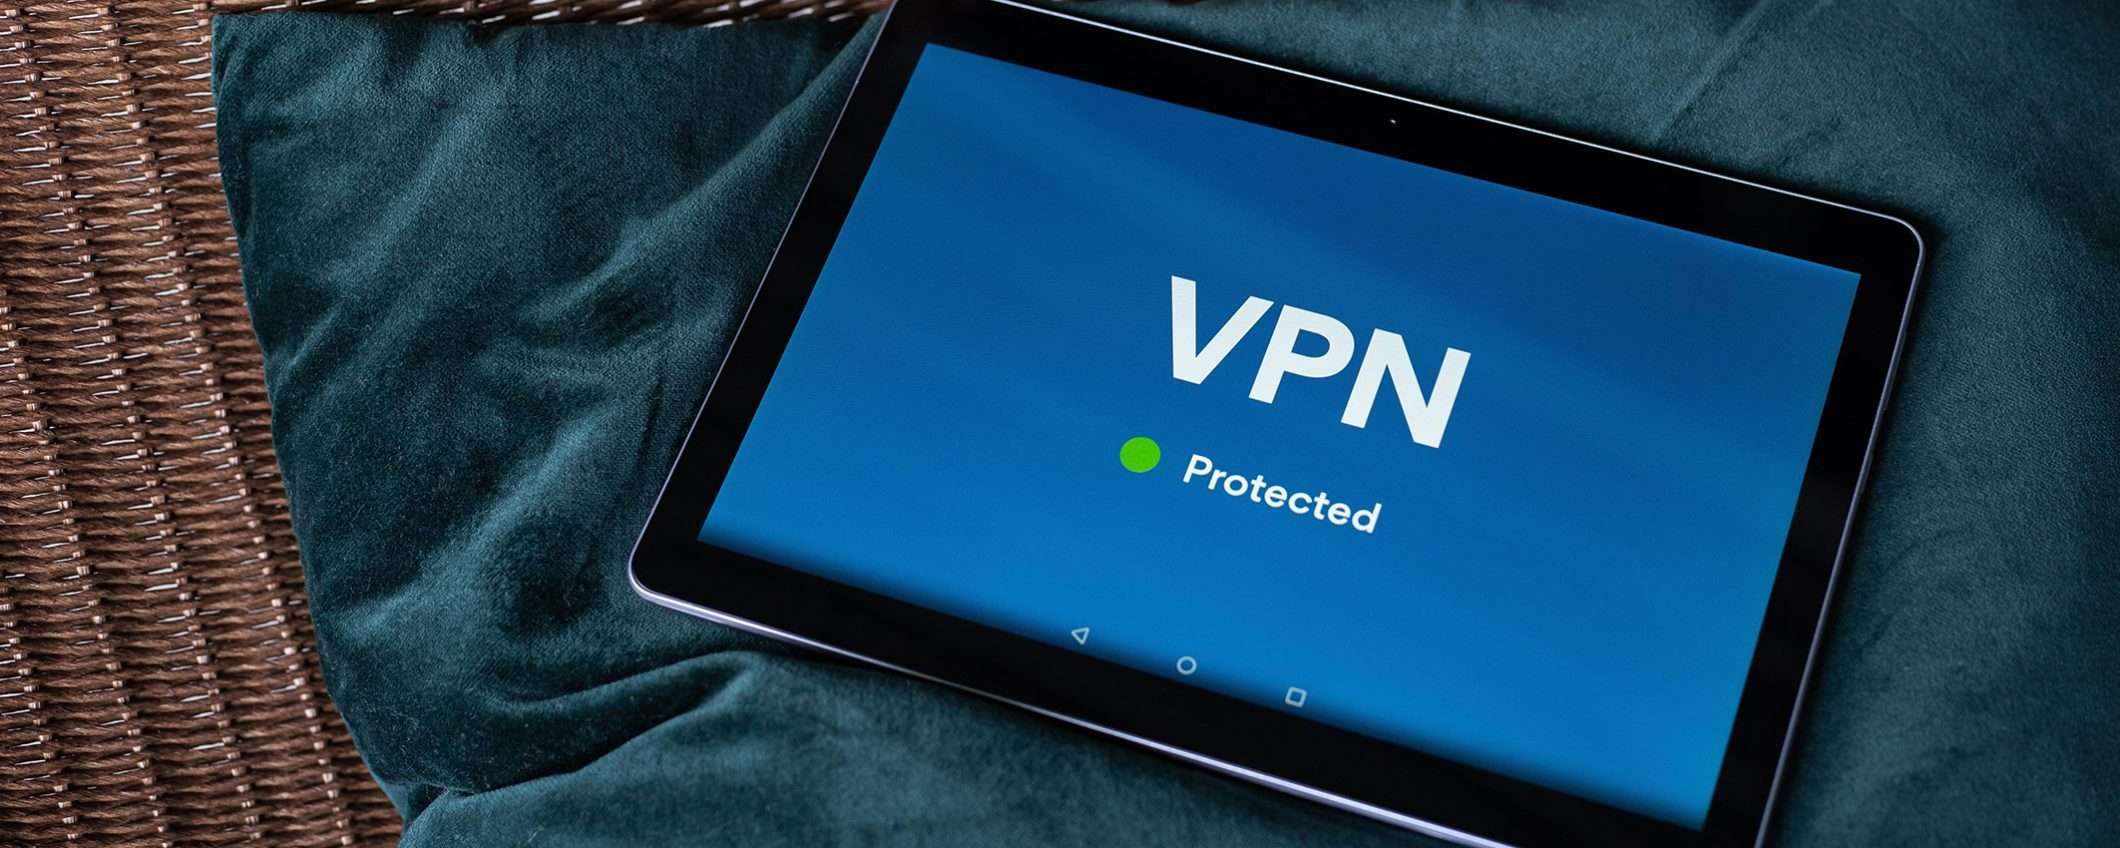 Festa del papà, regala la privacy con Atlas VPN (86% di sconto)